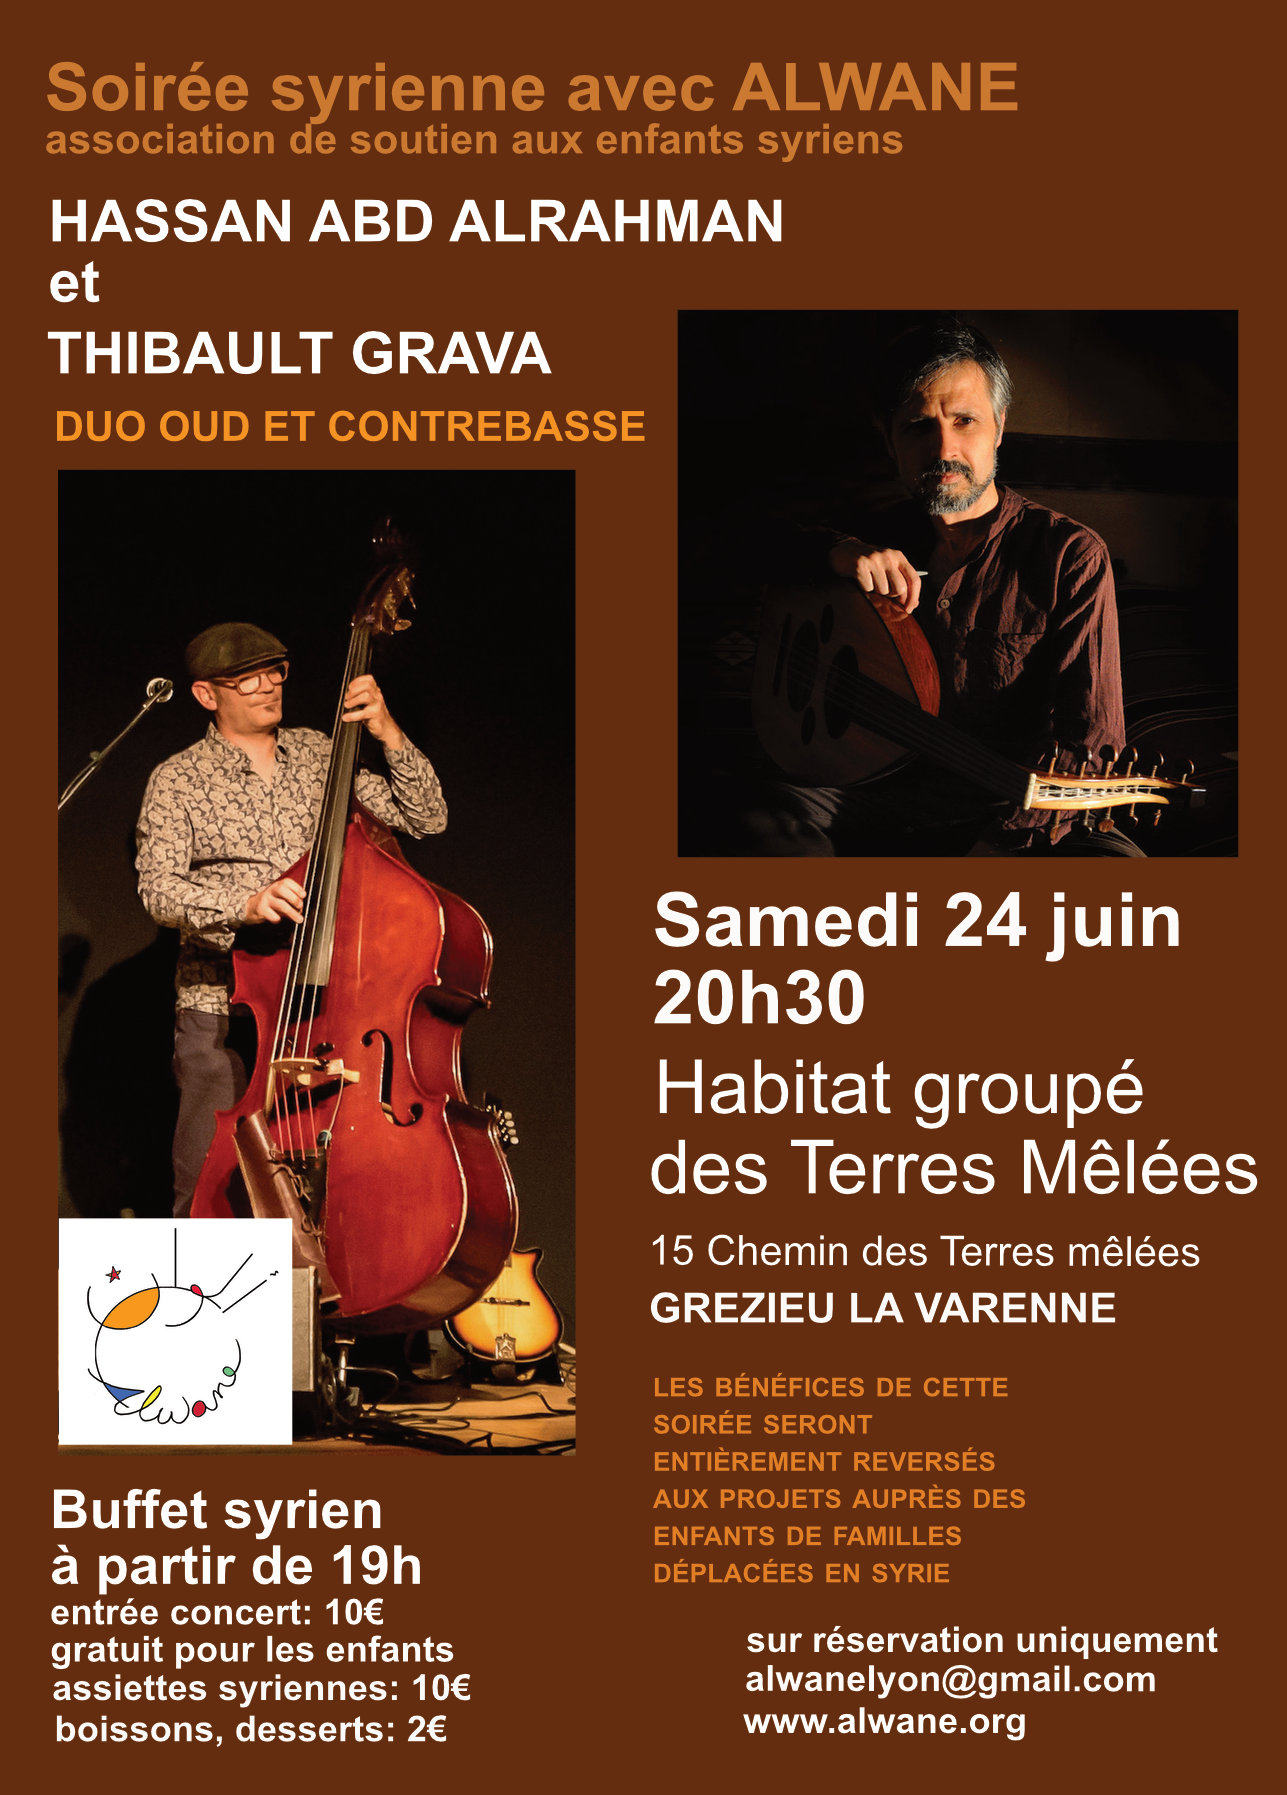 Soirée syrienne Concert Hassan Abd Alrahman/ Thibault Grava